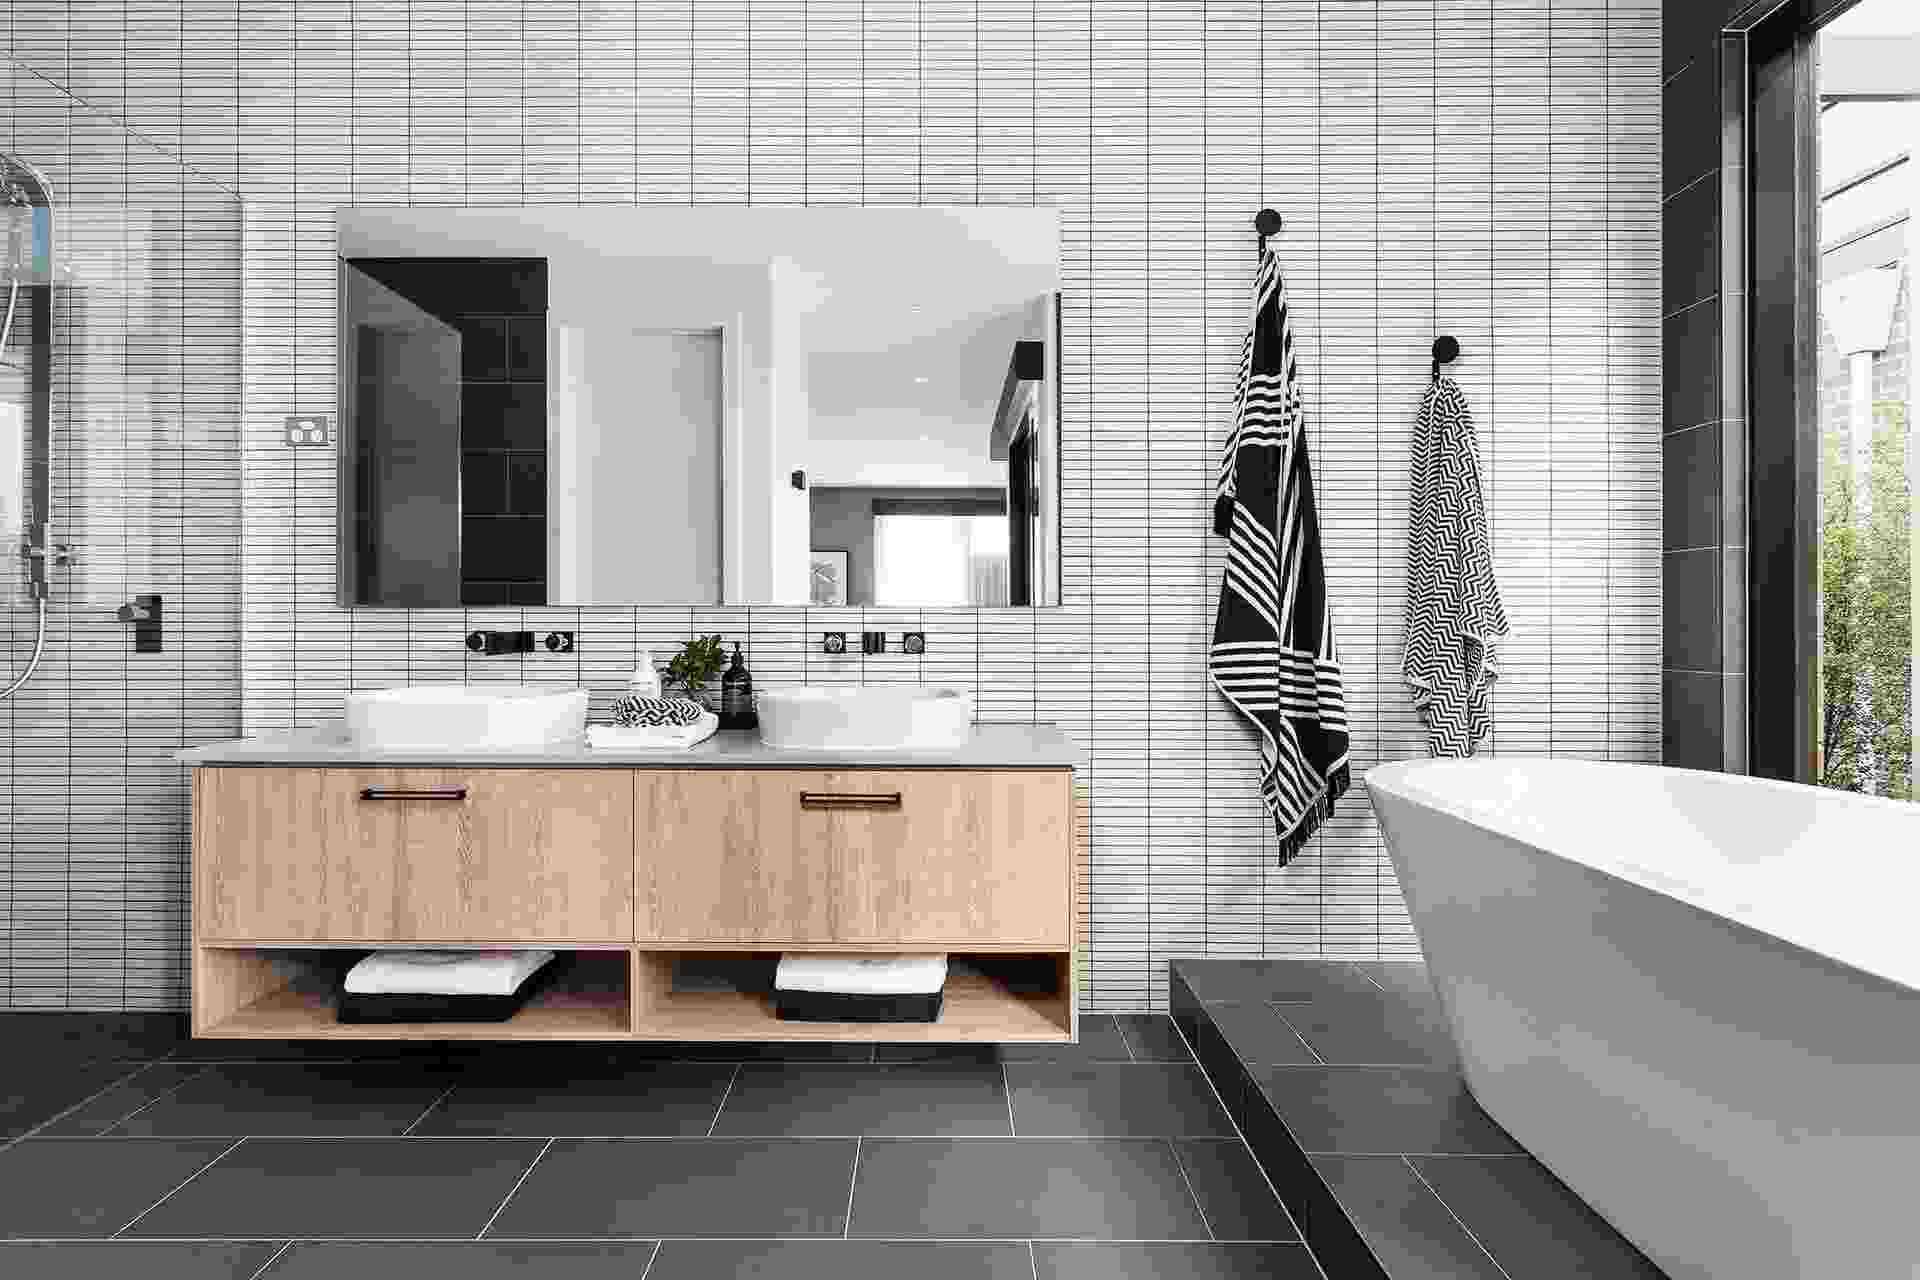 Badezimmer in Grau Weiss Holz Tapete im Bad Vorteile Badewanne Wohntrends